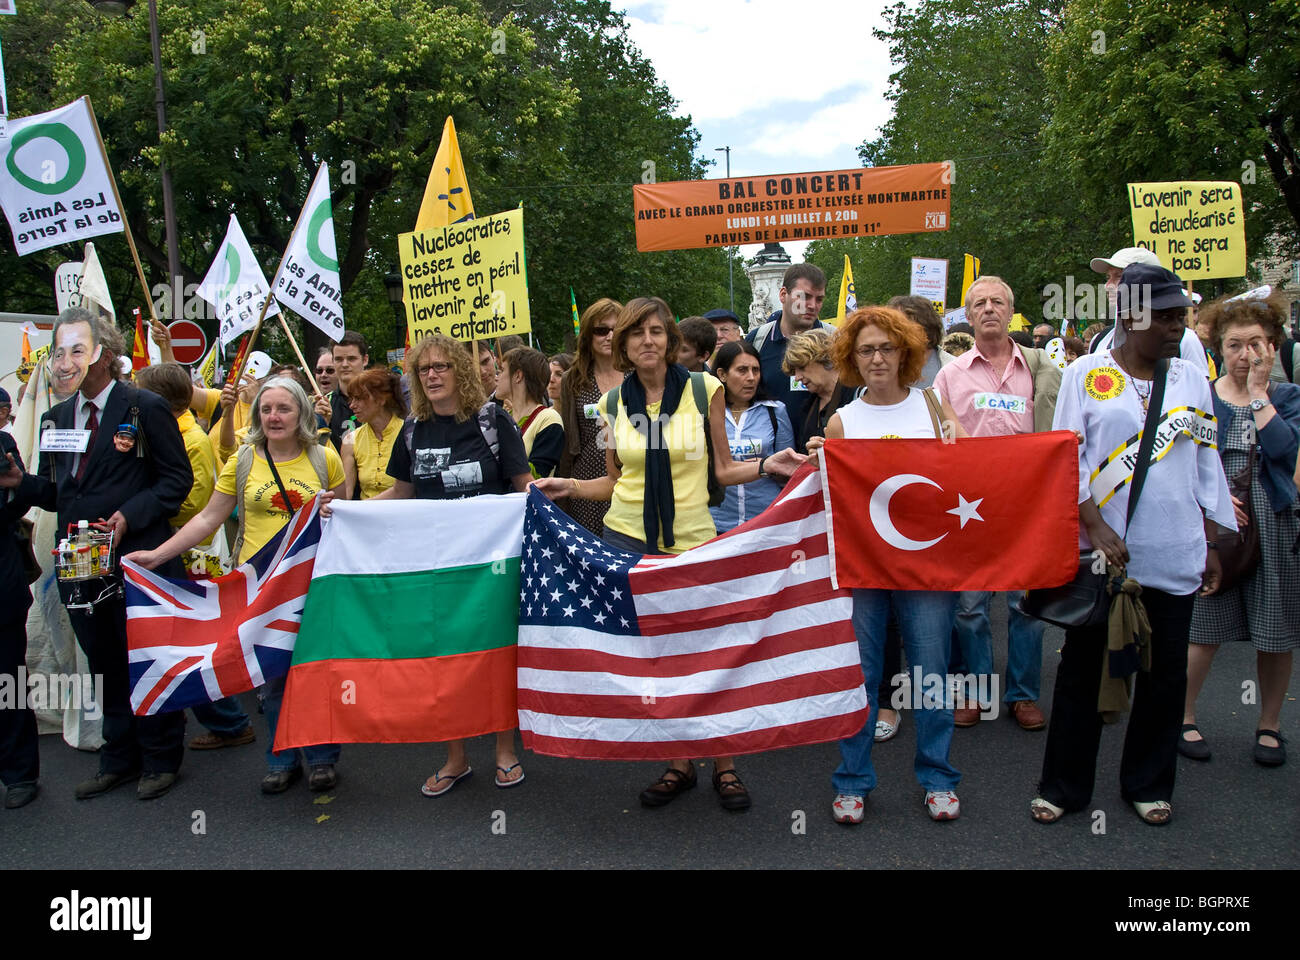 Paris, FRANCE - foule nombreuse, Front, démonstration d'énergie anti-nucléaire par plusieurs N.G.O.. Activistes anti-nucléaire internationaux, politique internationale, drapeaux nationaux Banque D'Images